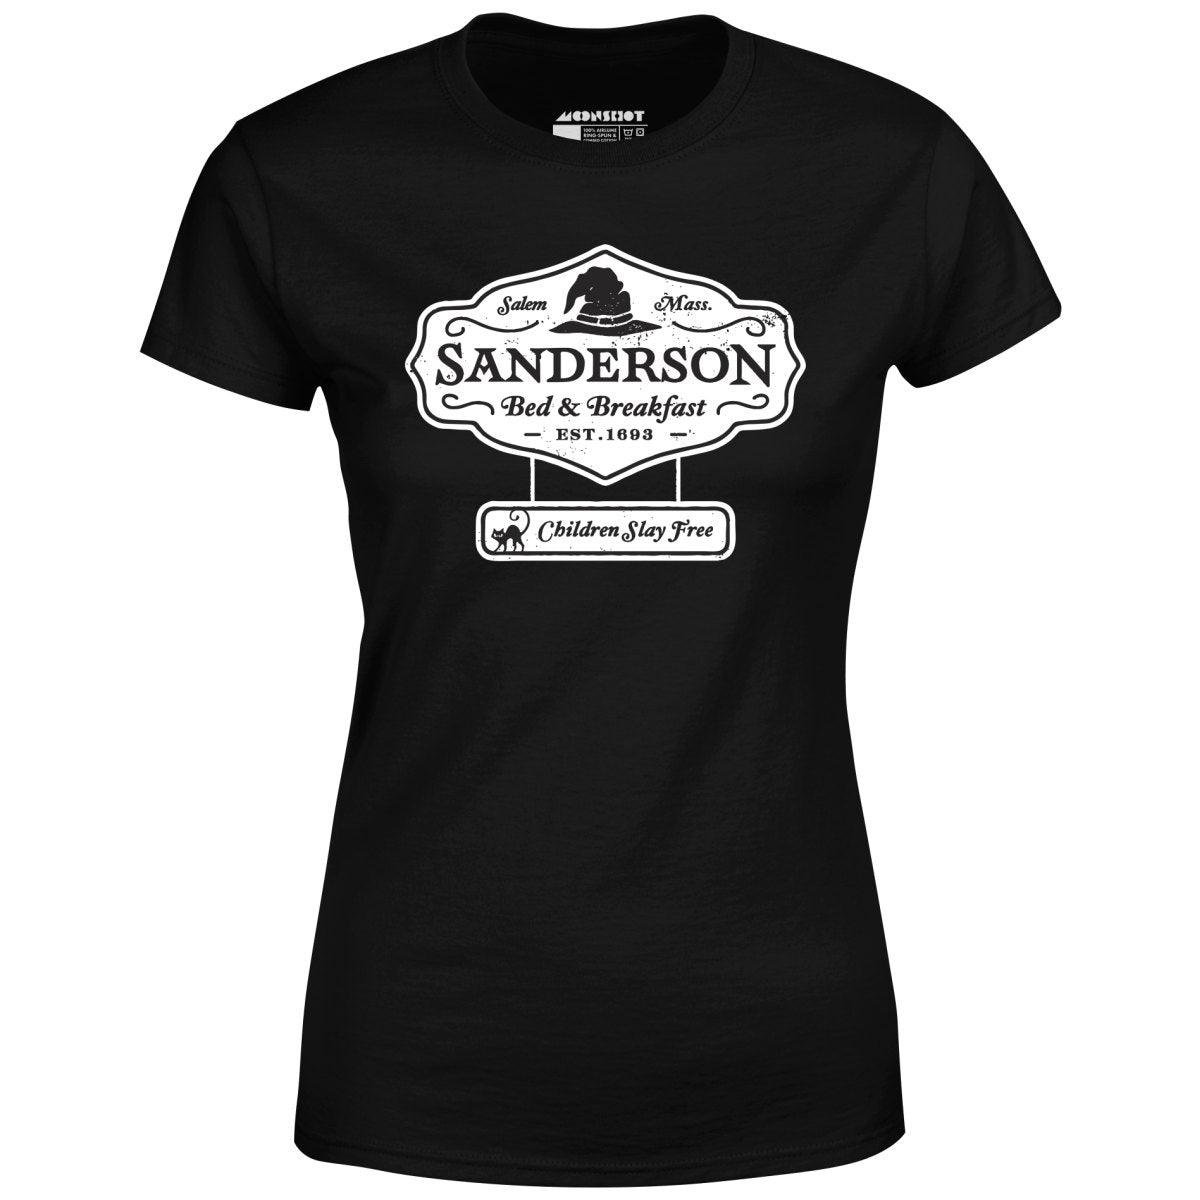 Sanderson Bed & Breakfast - Women's T-Shirt